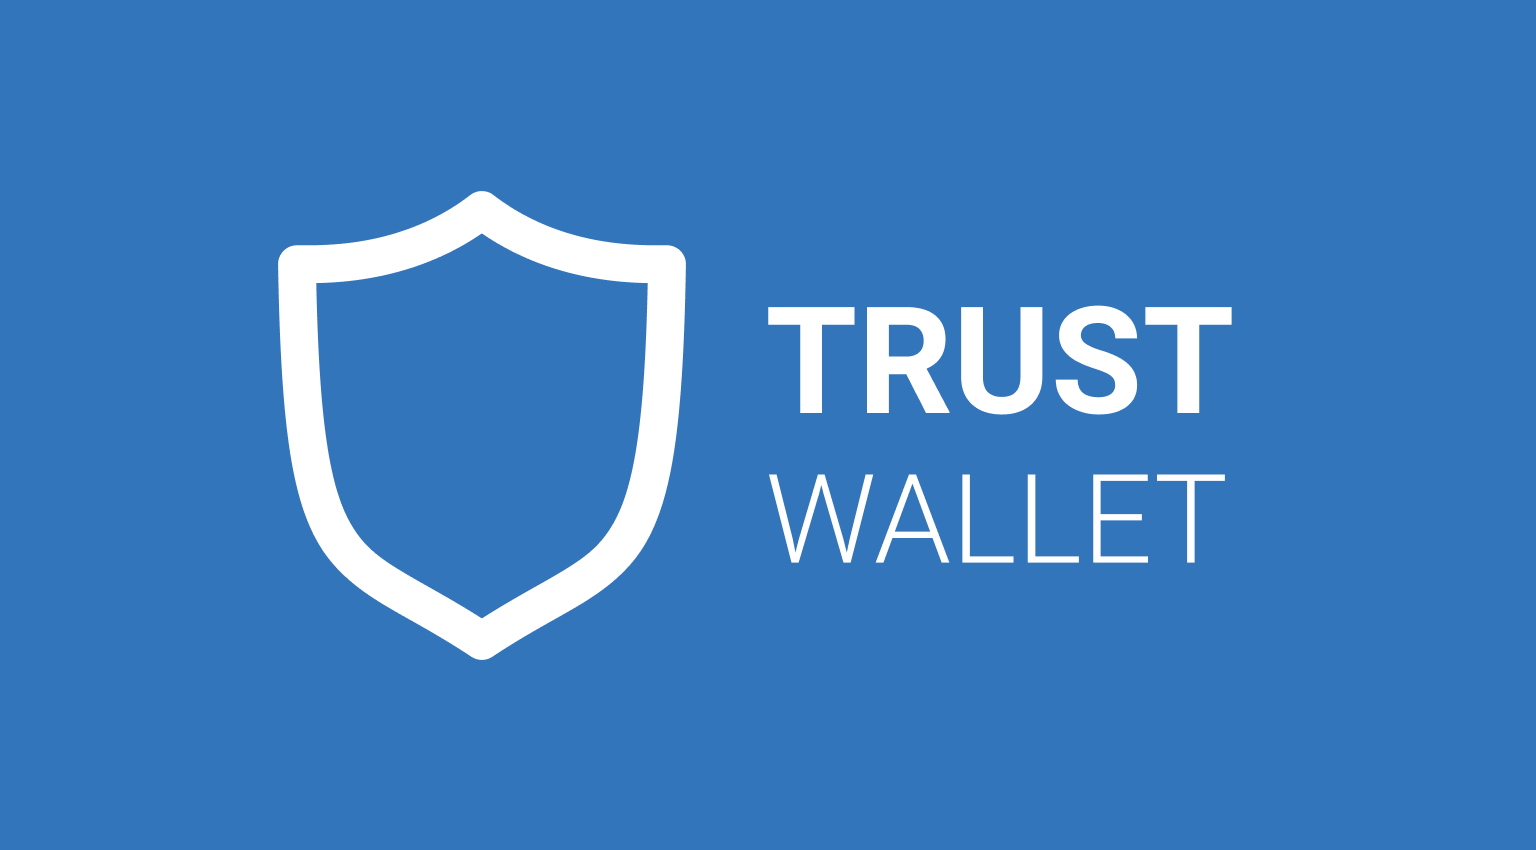 download trust wallet apkpure